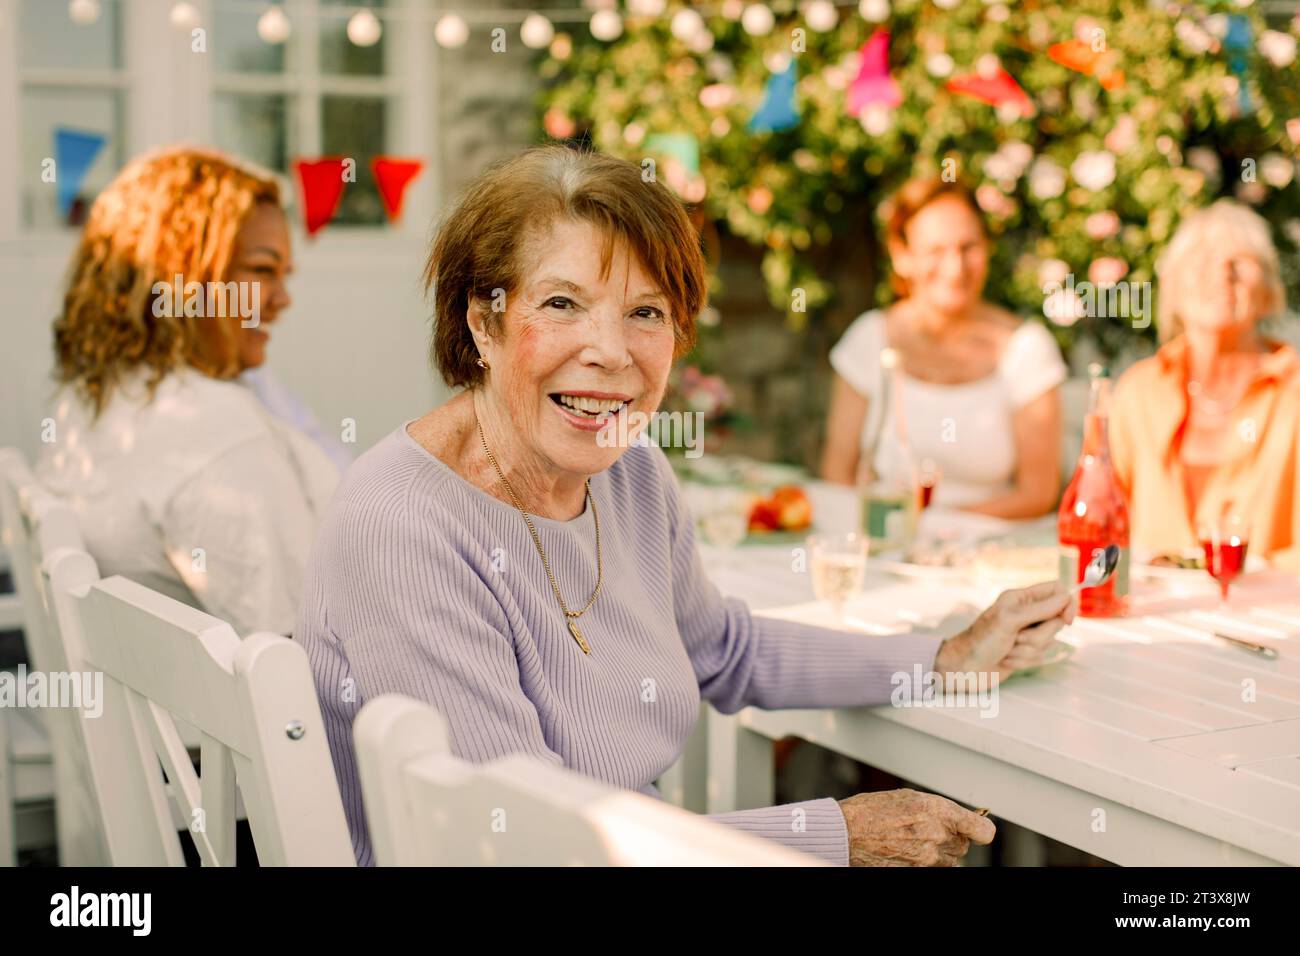 Portrait de femme âgée heureuse assise à la table à manger dans la cour arrière Banque D'Images